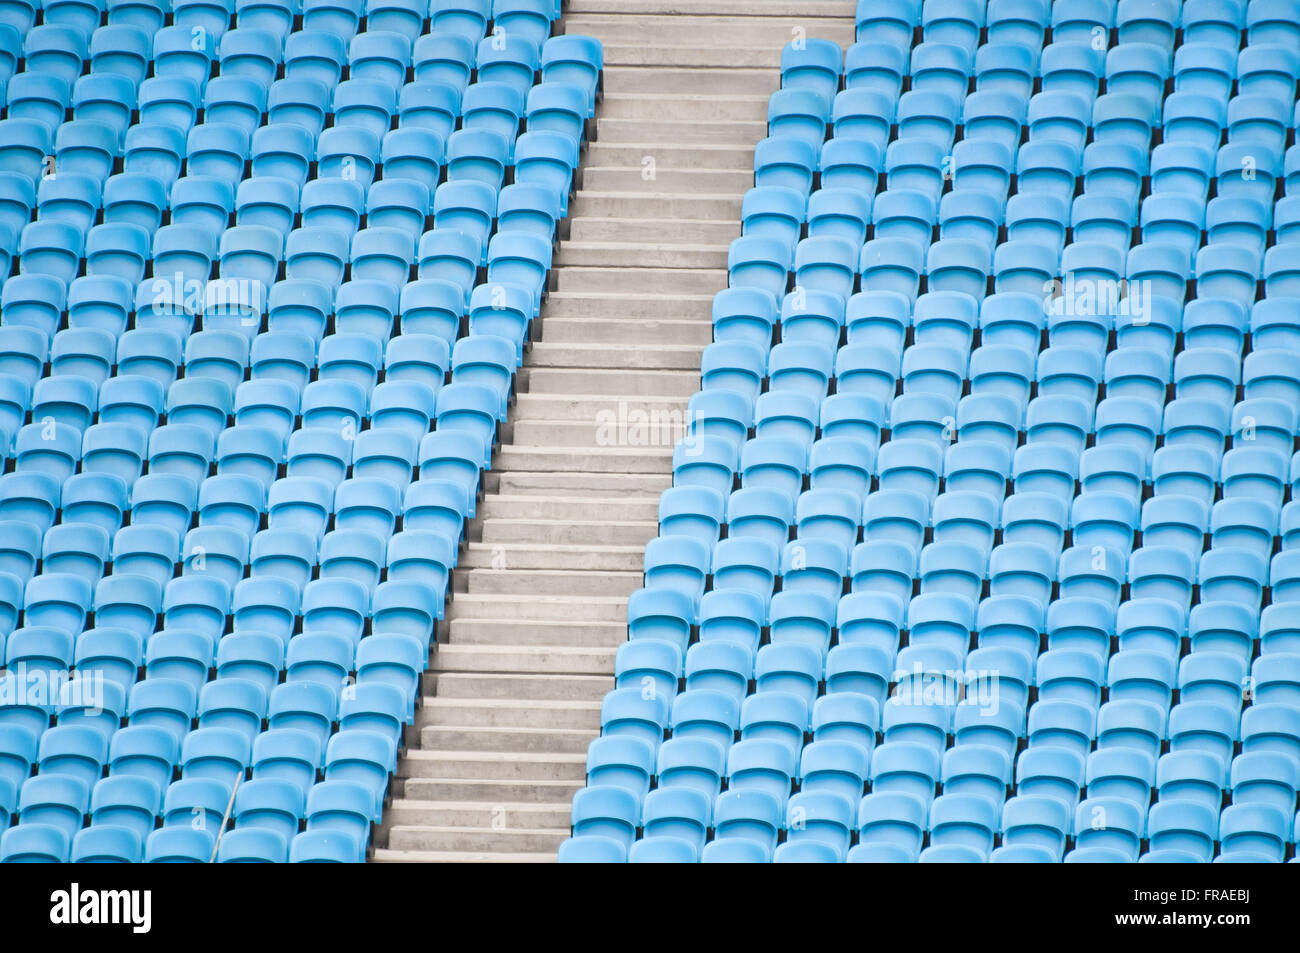 Detalle de sillas azules en las gradas del estadio de fútbol Foto de stock